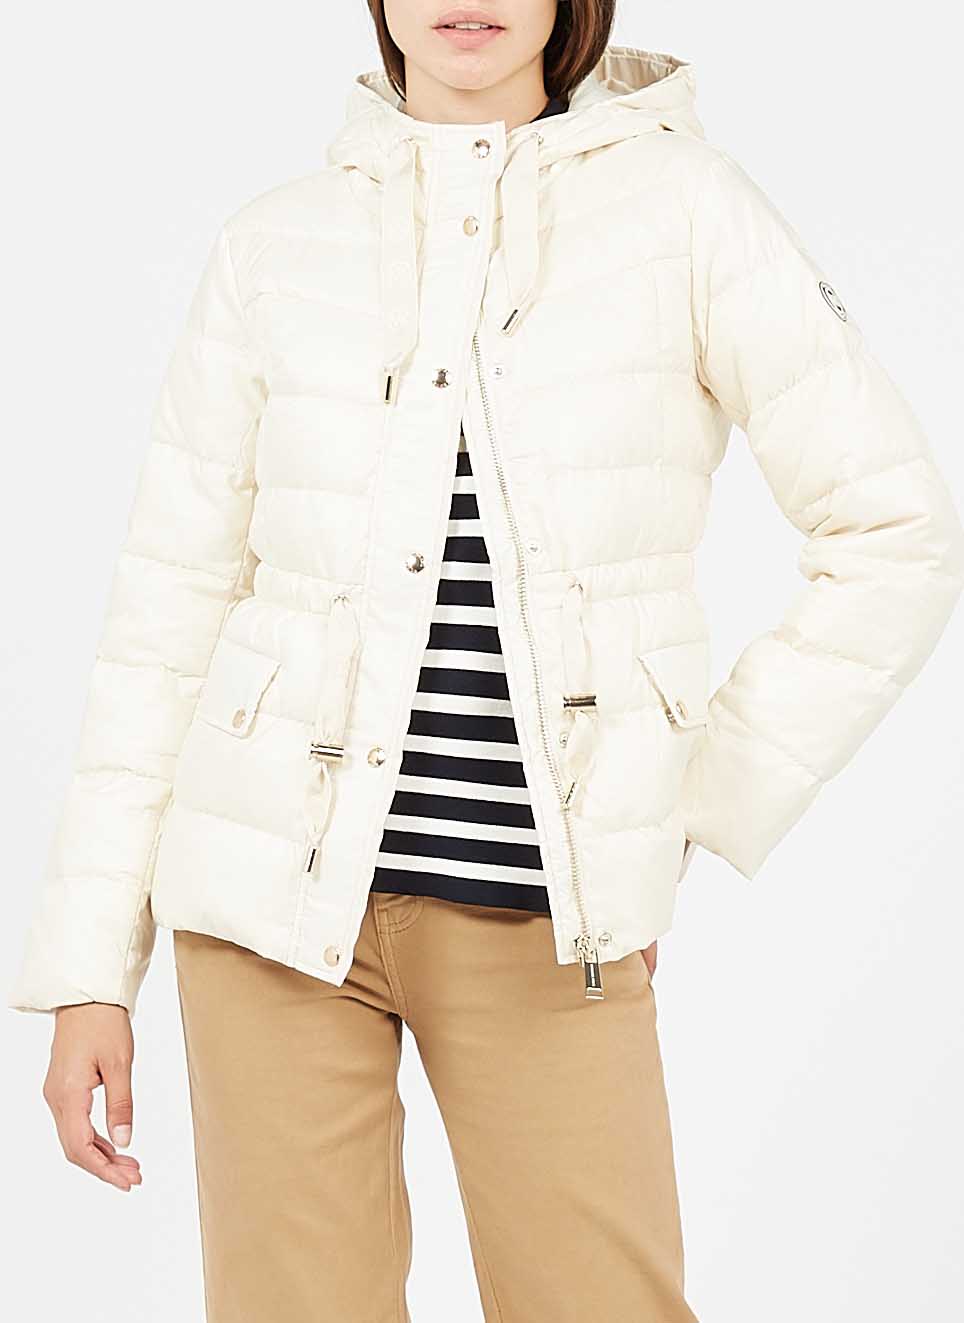 Michael Kors White Jacket Best Value, 57% OFF | aarav.co